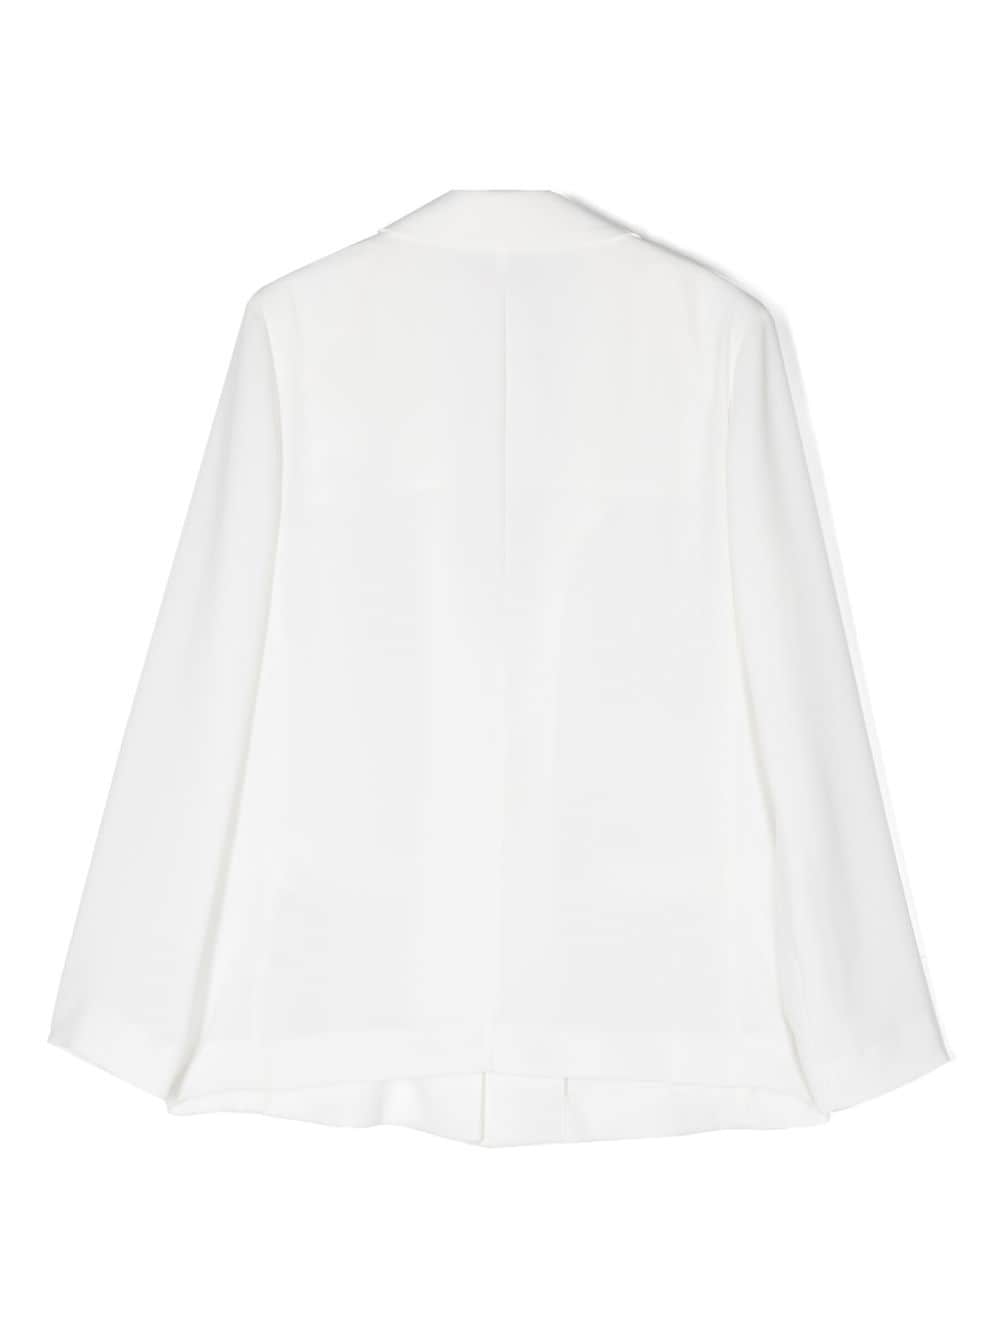 White blazer for girls